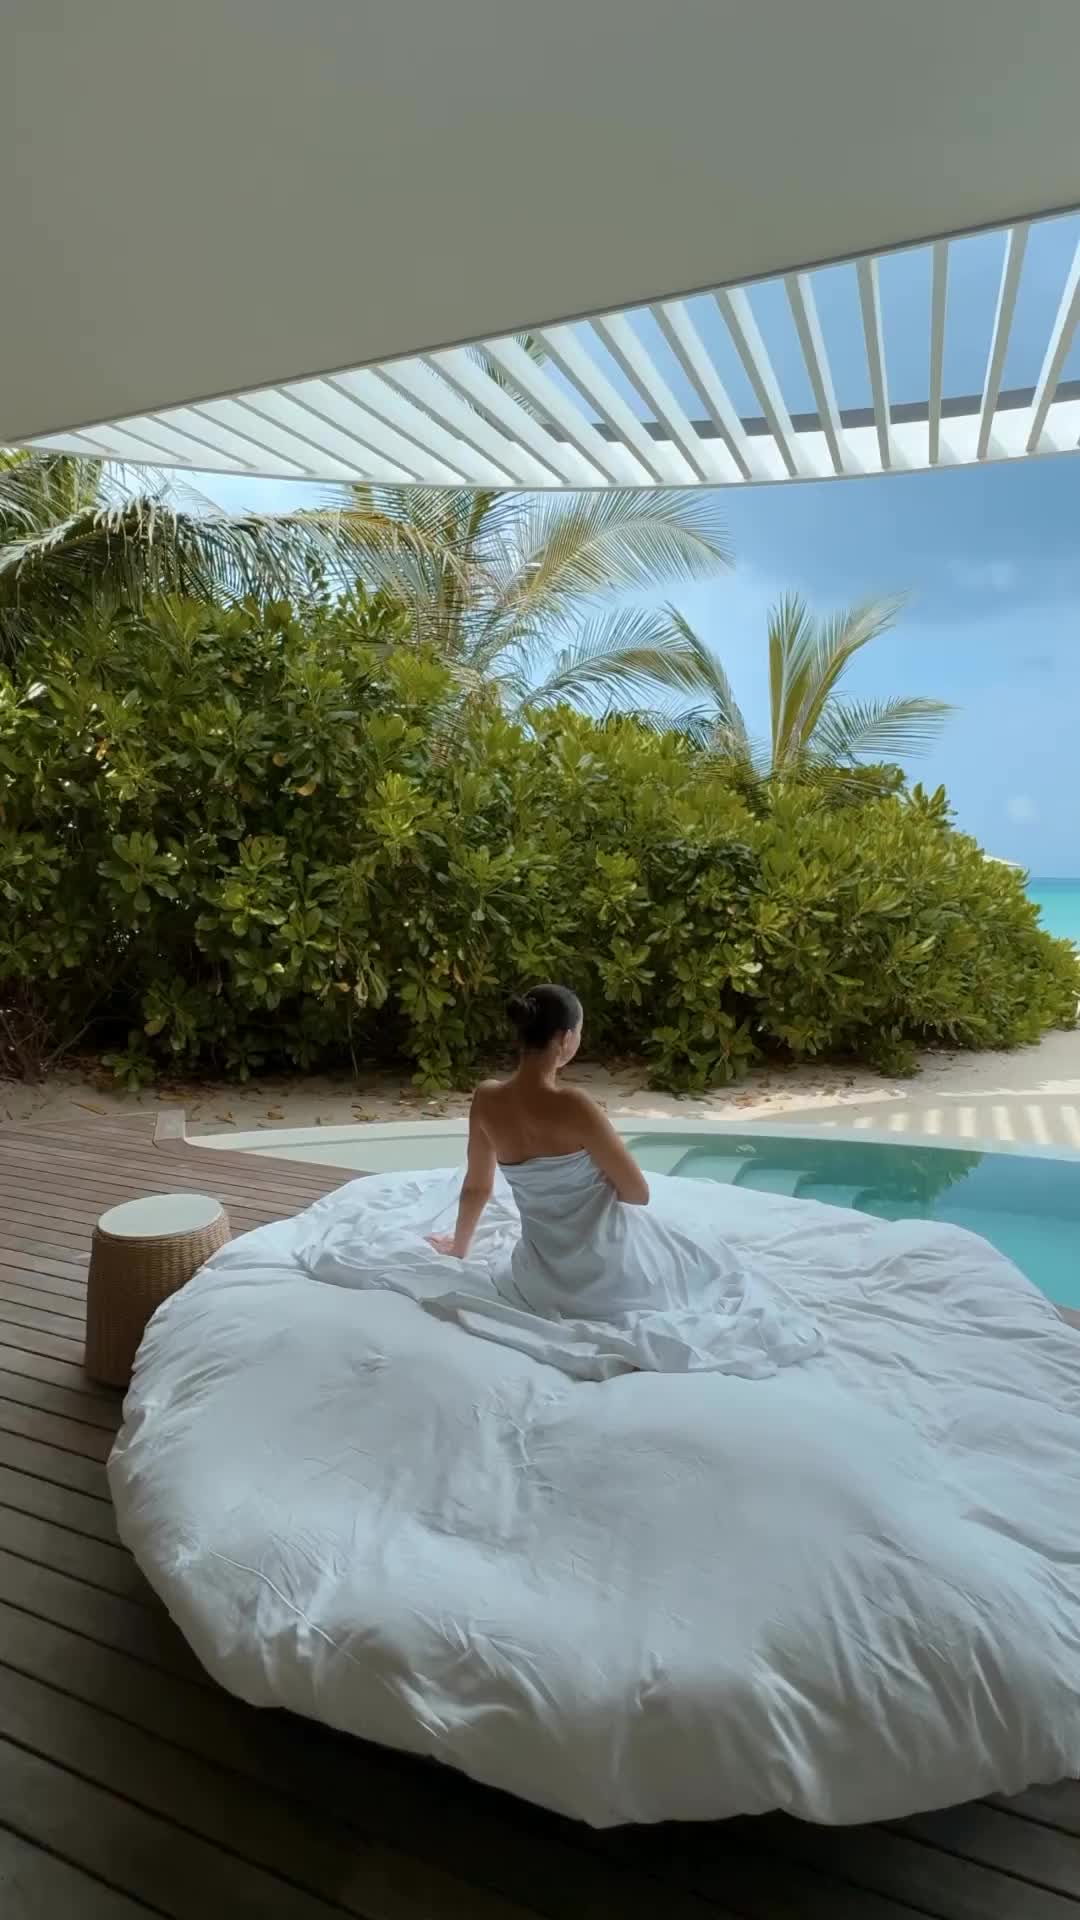 Tranquil Morning at The Ritz-Carlton Maldives